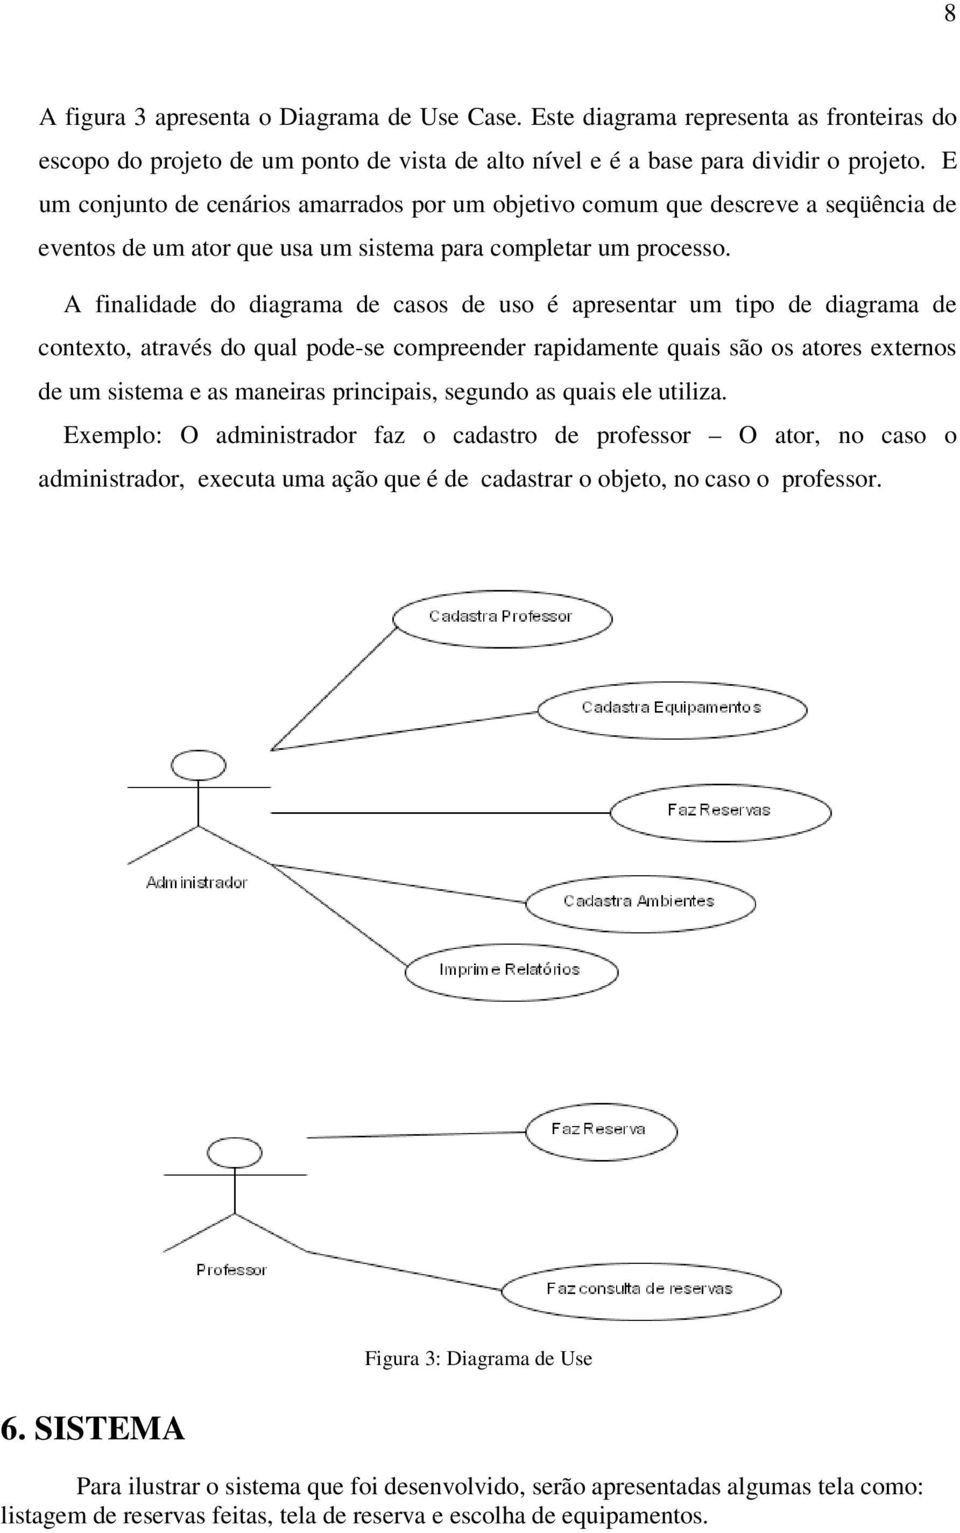 A finalidade do diagrama de casos de uso é apresentar um tipo de diagrama de contexto, através do qual pode-se compreender rapidamente quais são os atores externos de um sistema e as maneiras